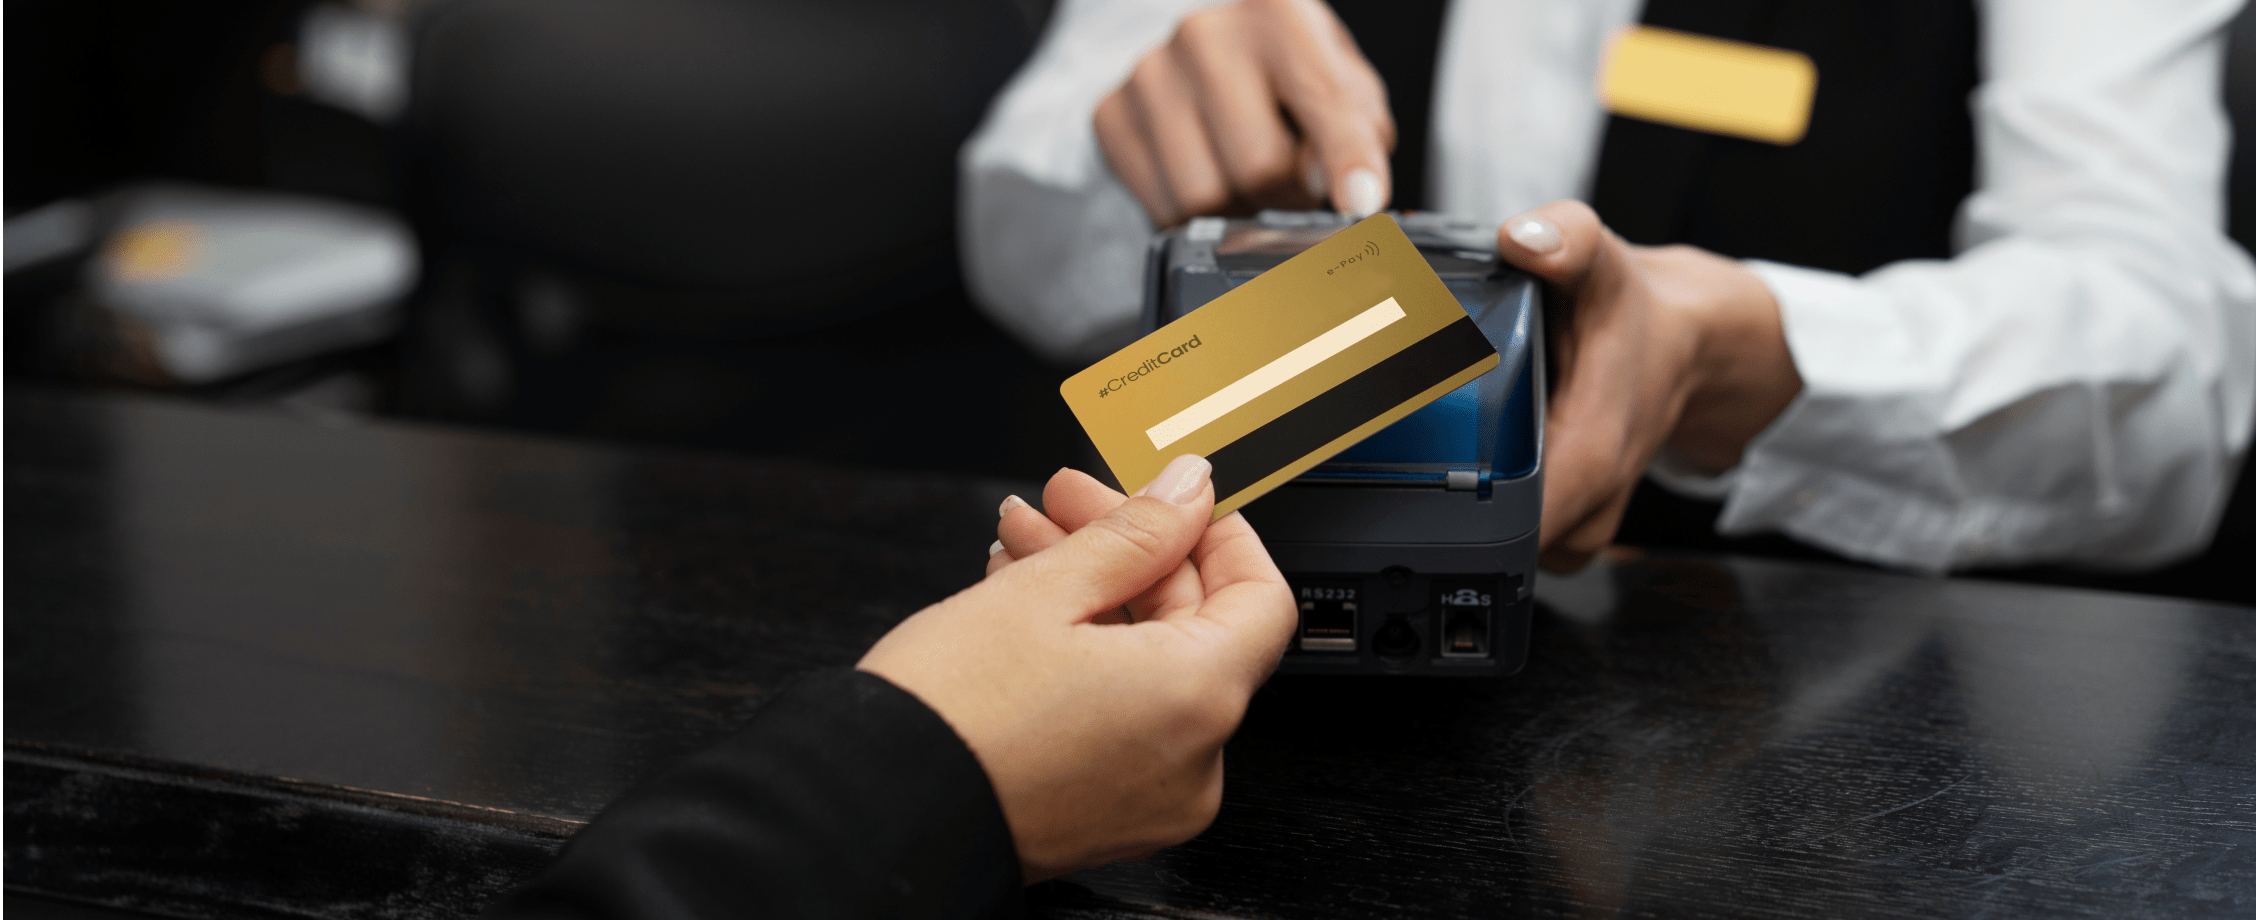 Как зарабатывать на кредитной карте: пять простых шагов